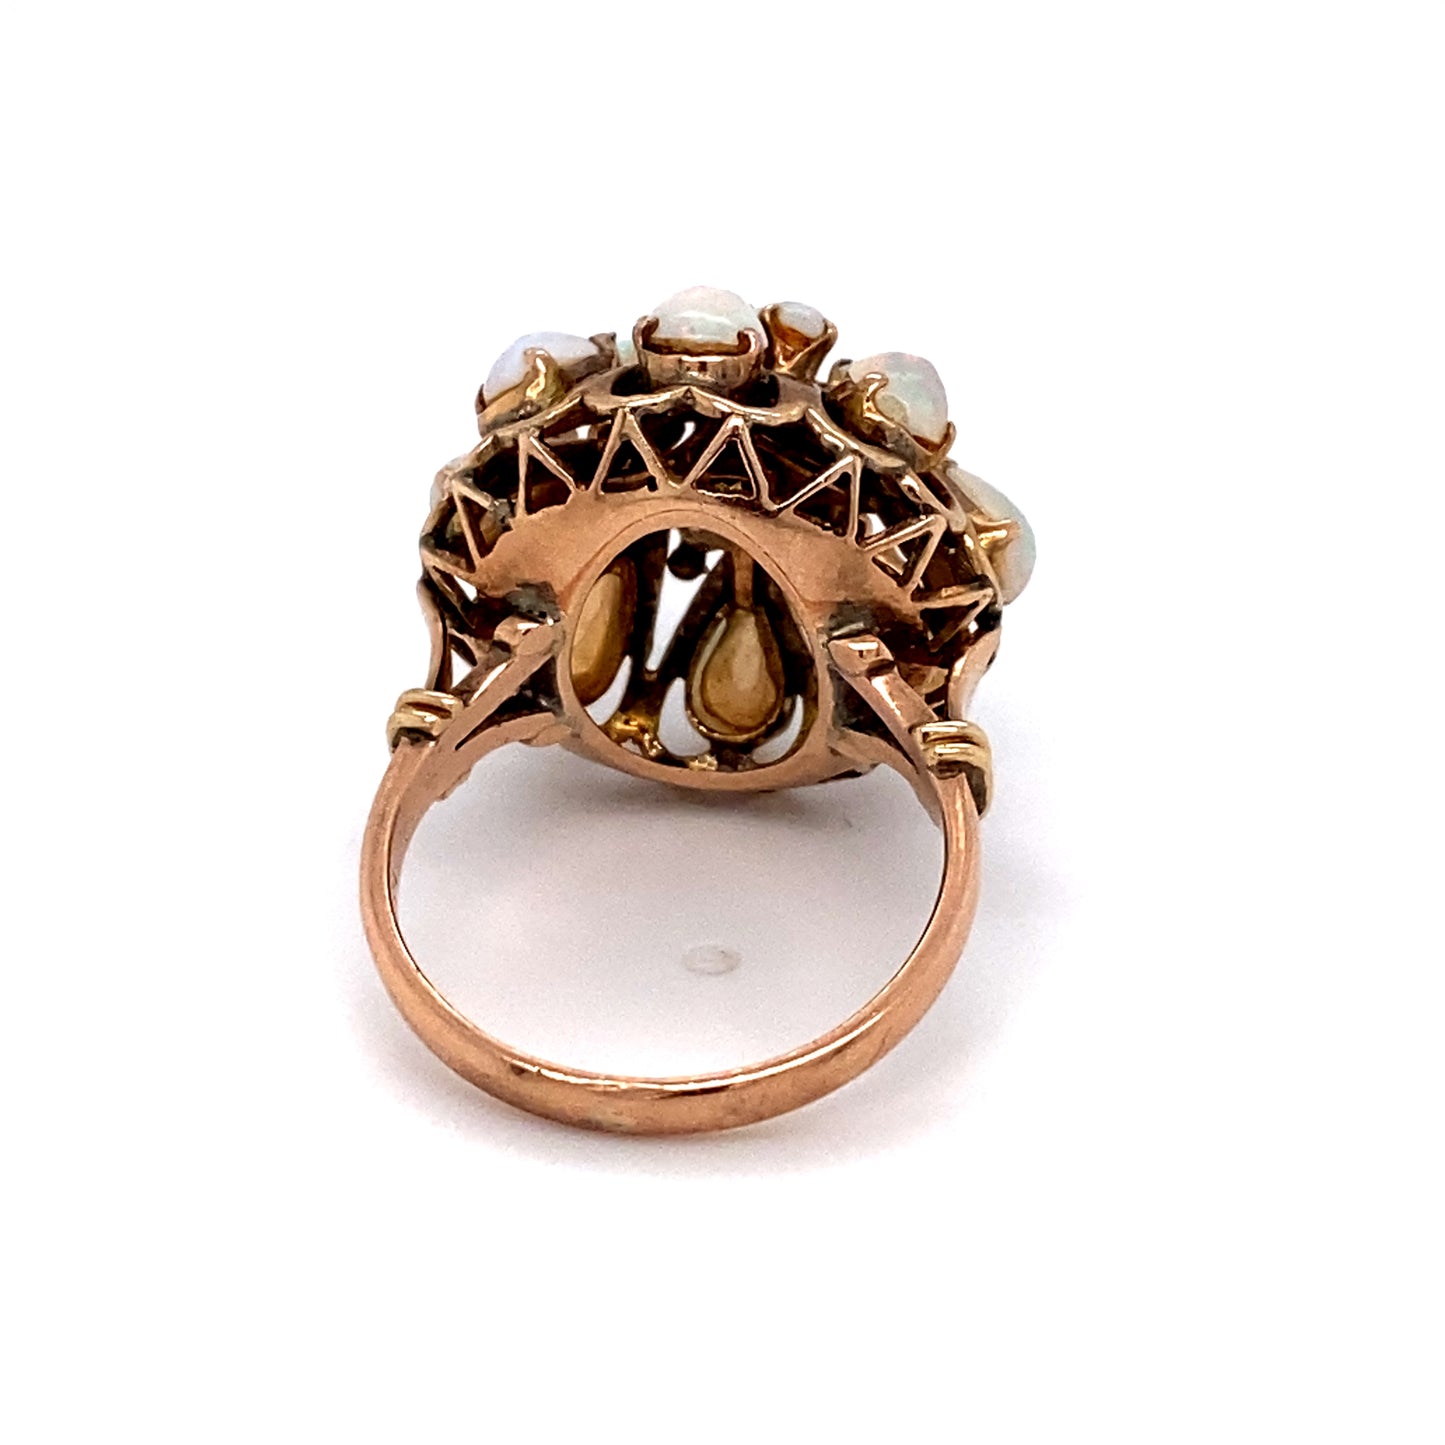 Circa 1980 4.0 Carat Opal Thai Princess Ring in 14 Karat Gold